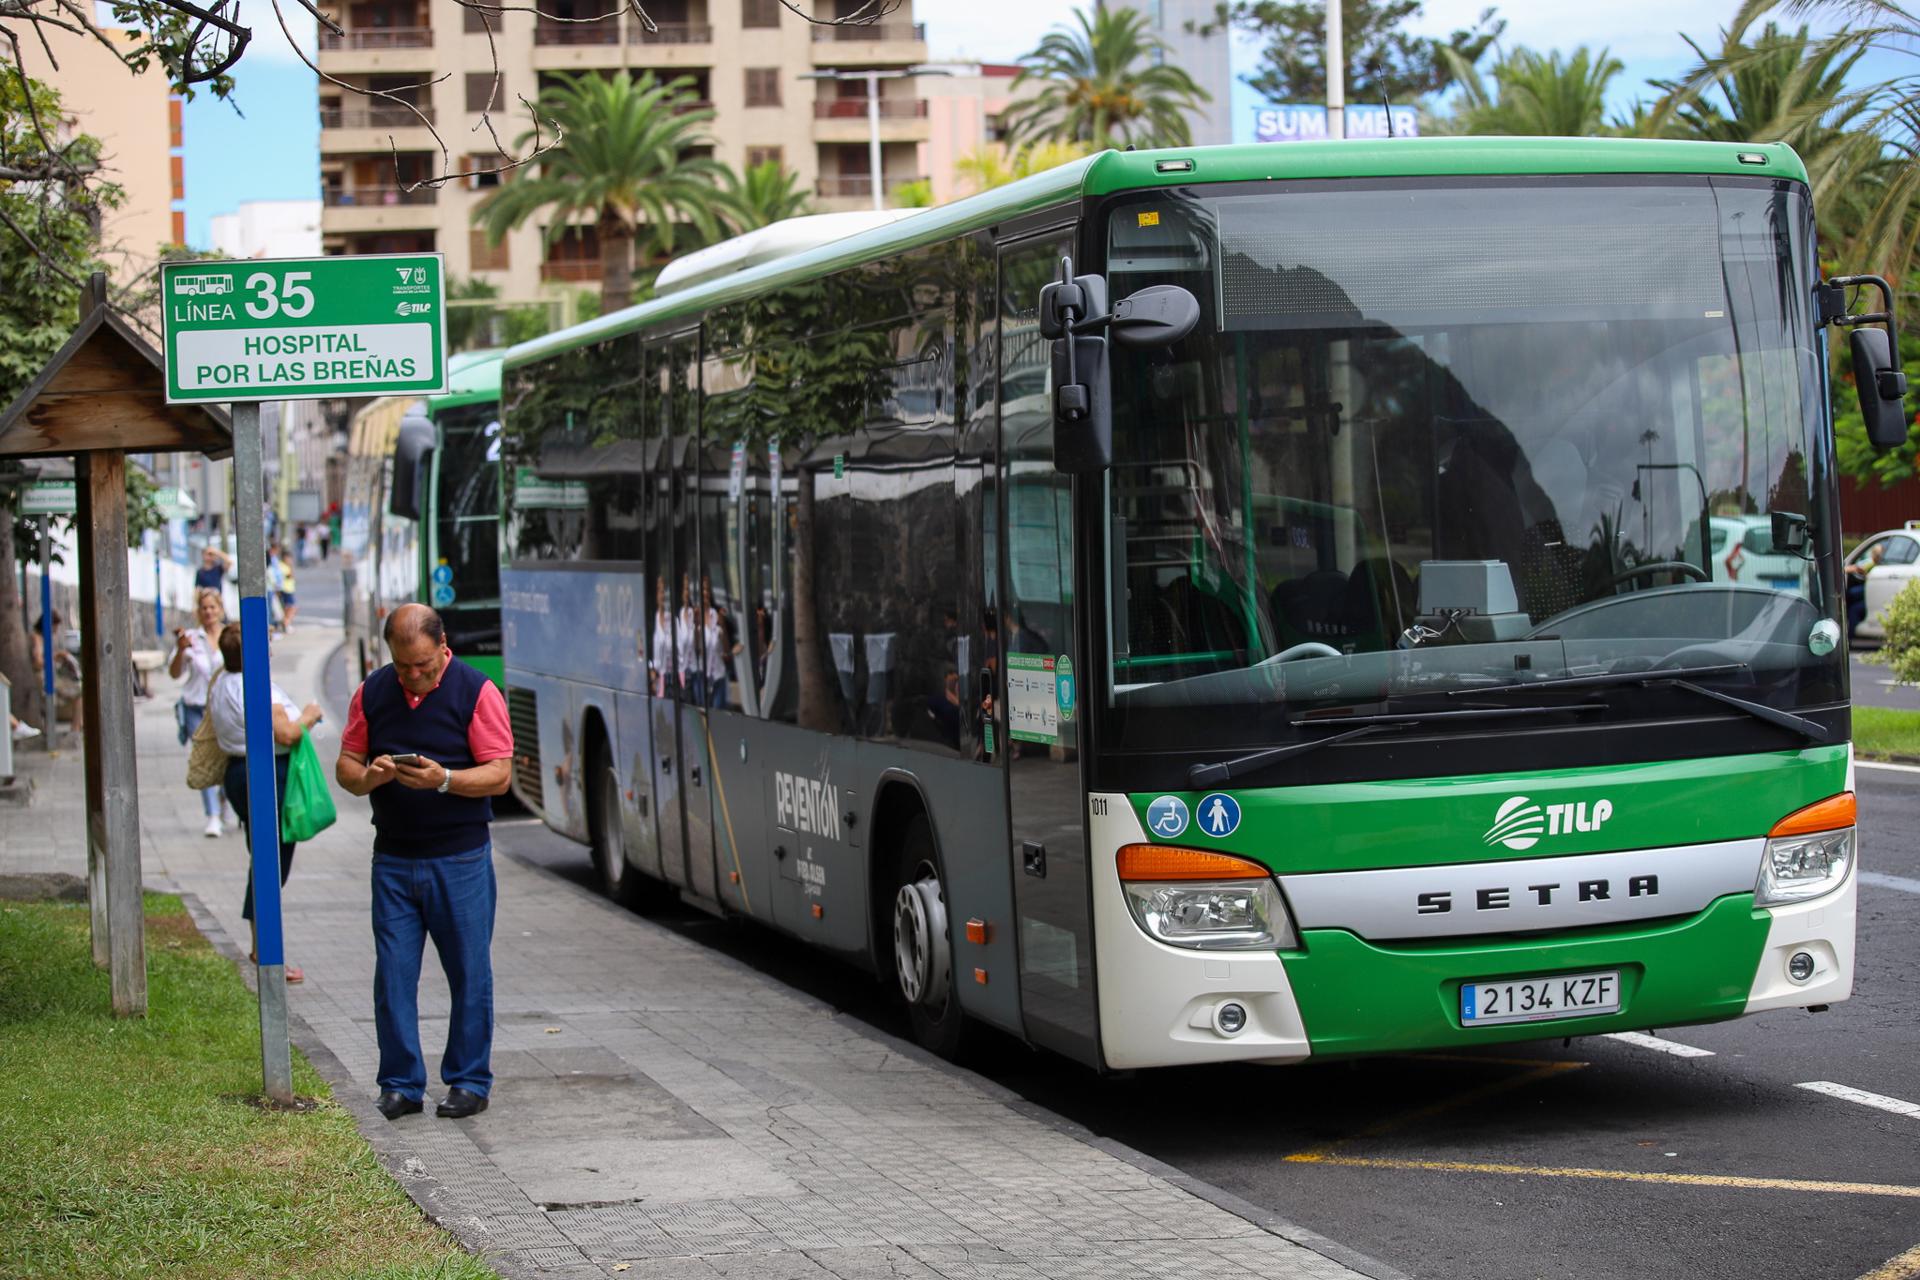 Foto de archivo de una guagua de transporte público en Santa Cruz de La Palma. EFE/ Luis G Morera